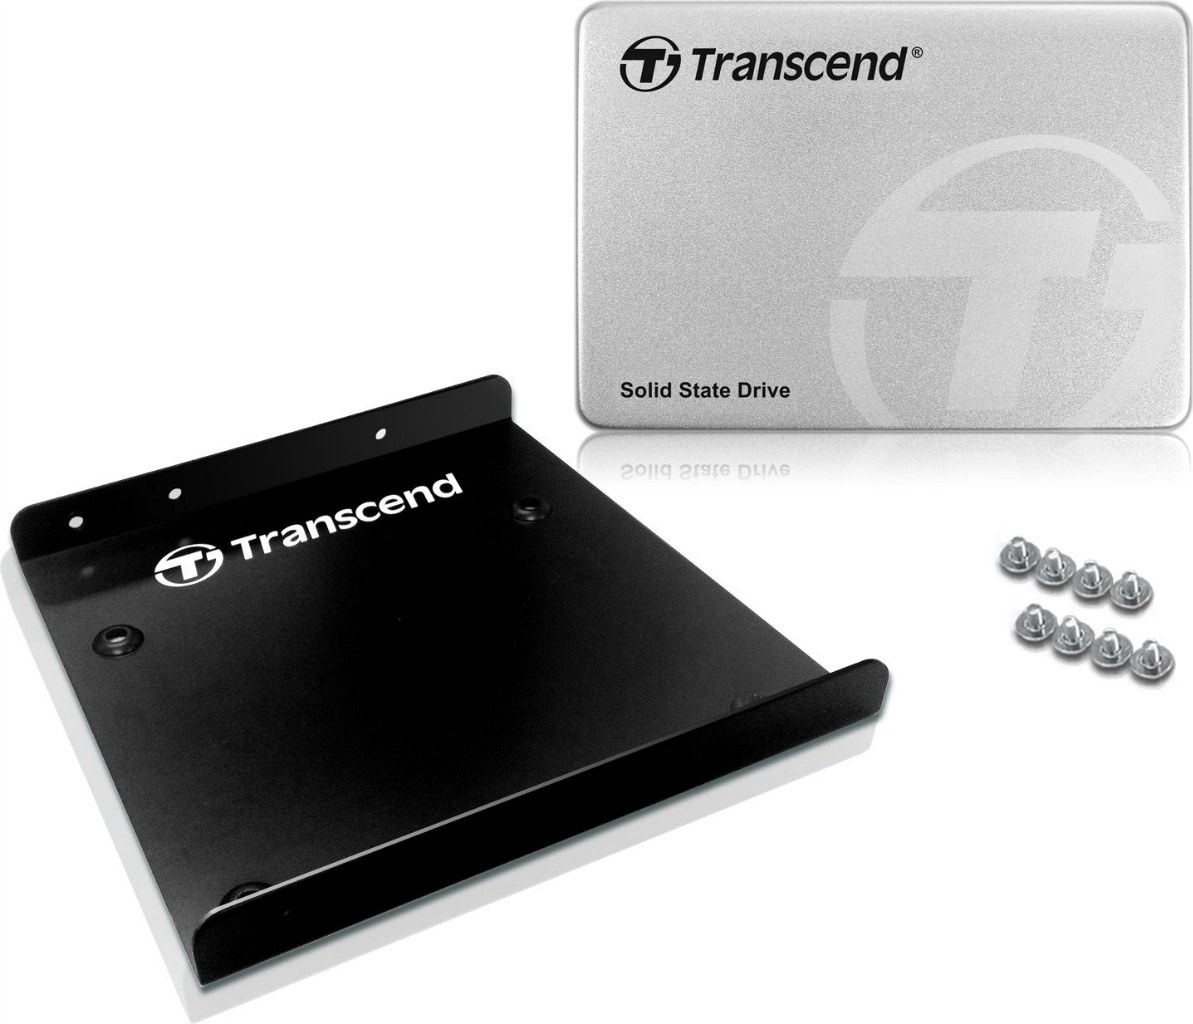 Dysk SSD Transcend SSD370 128GB SATA3 (TS128GSSD370S)